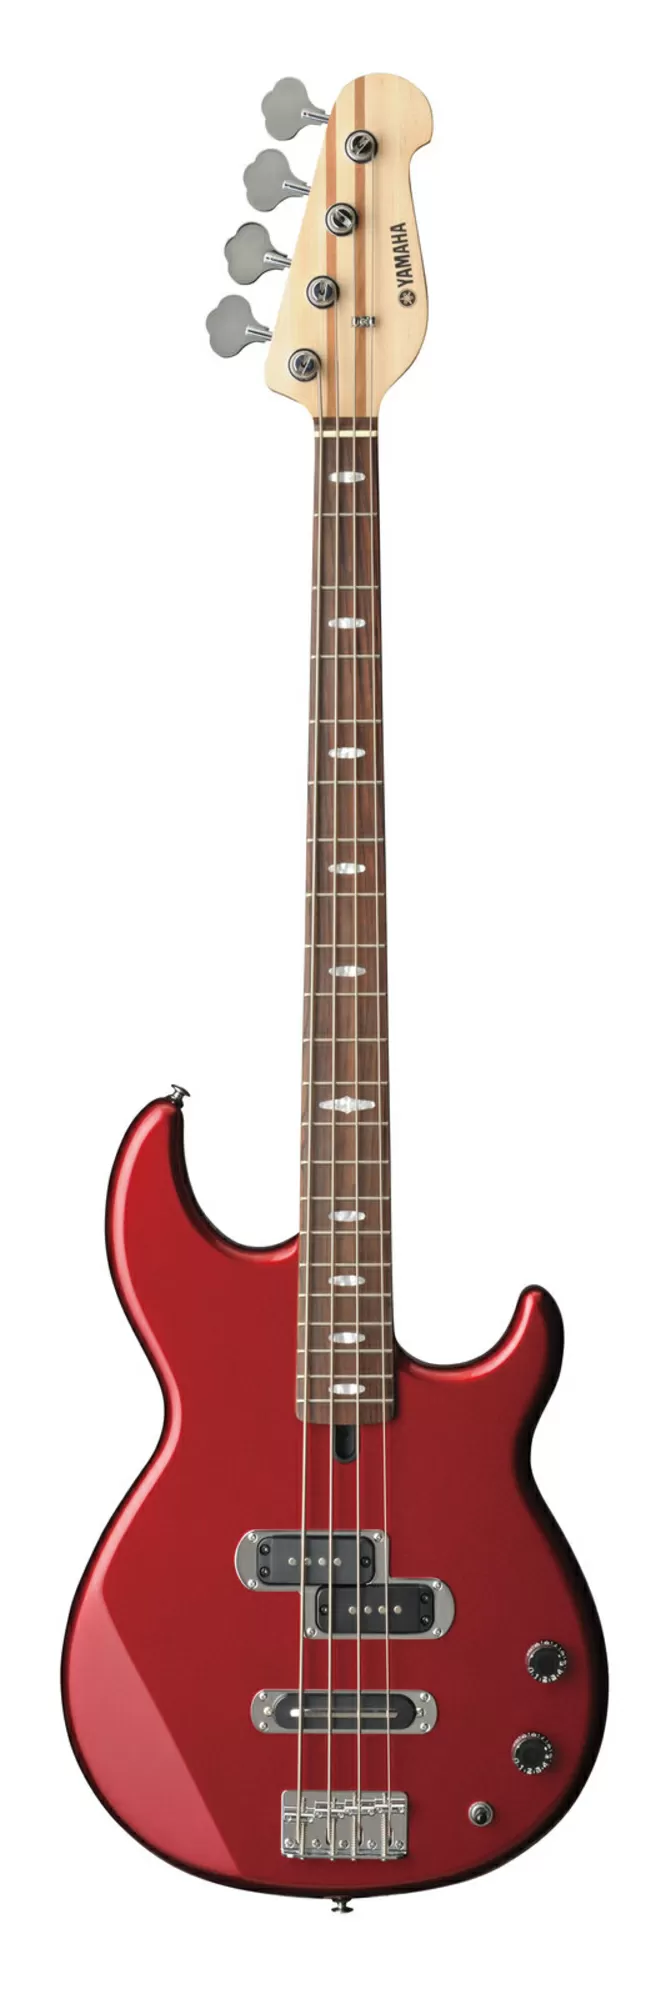 Продам бас гитару Yamaha BB 424 в идеальном состоянии,  плюс чехол. 